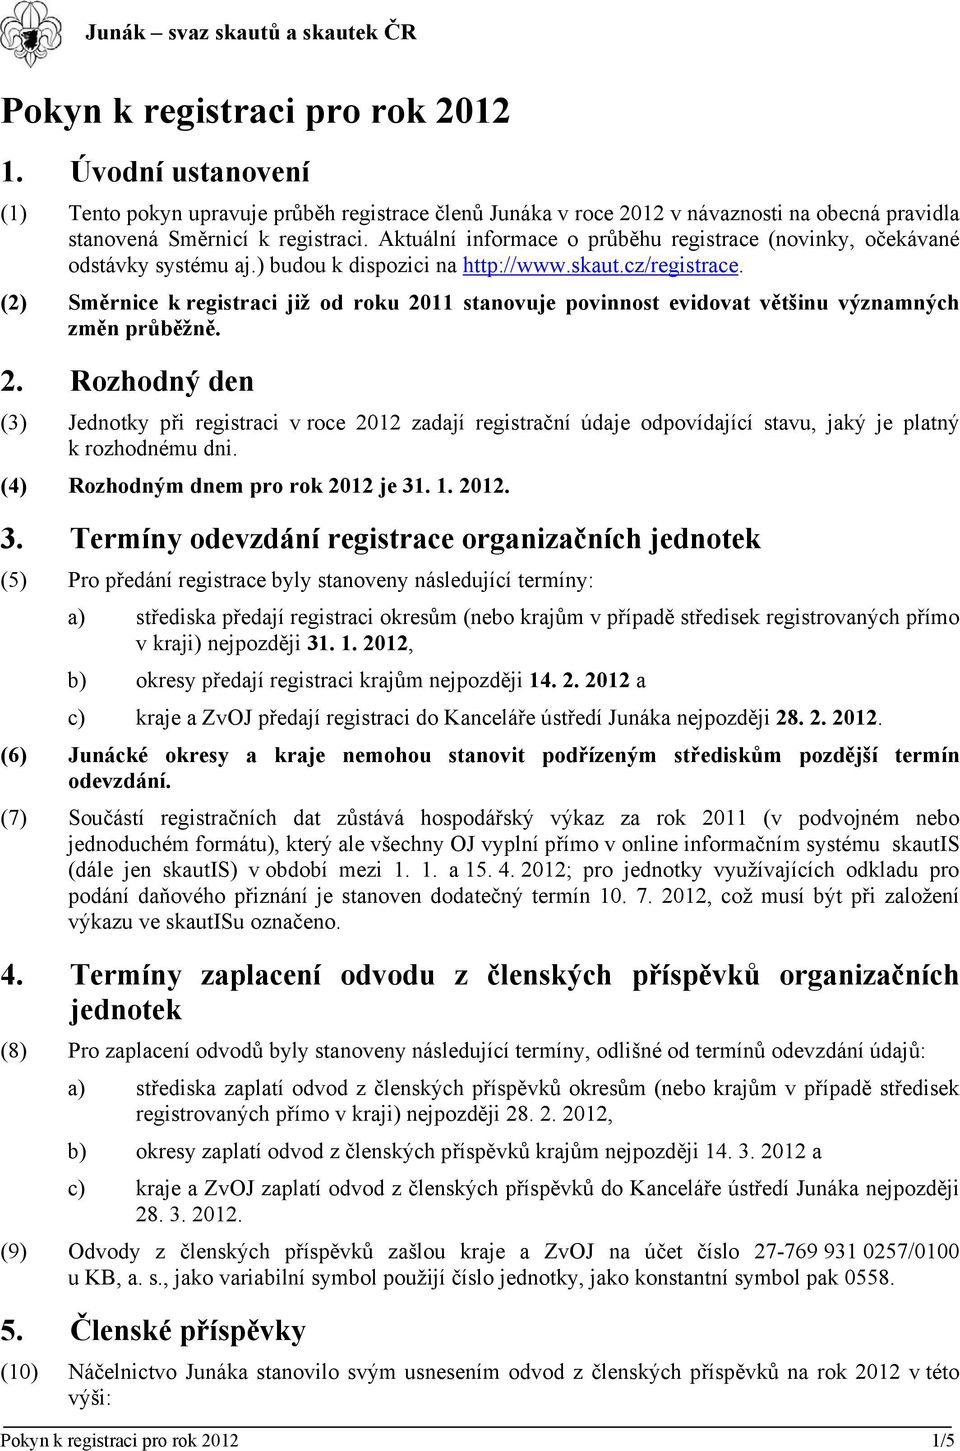 Aktuální informace o průběhu registrace (novinky, očekávané odstávky systému aj.) budou k dispozici na http://www.skaut.cz/registrace.